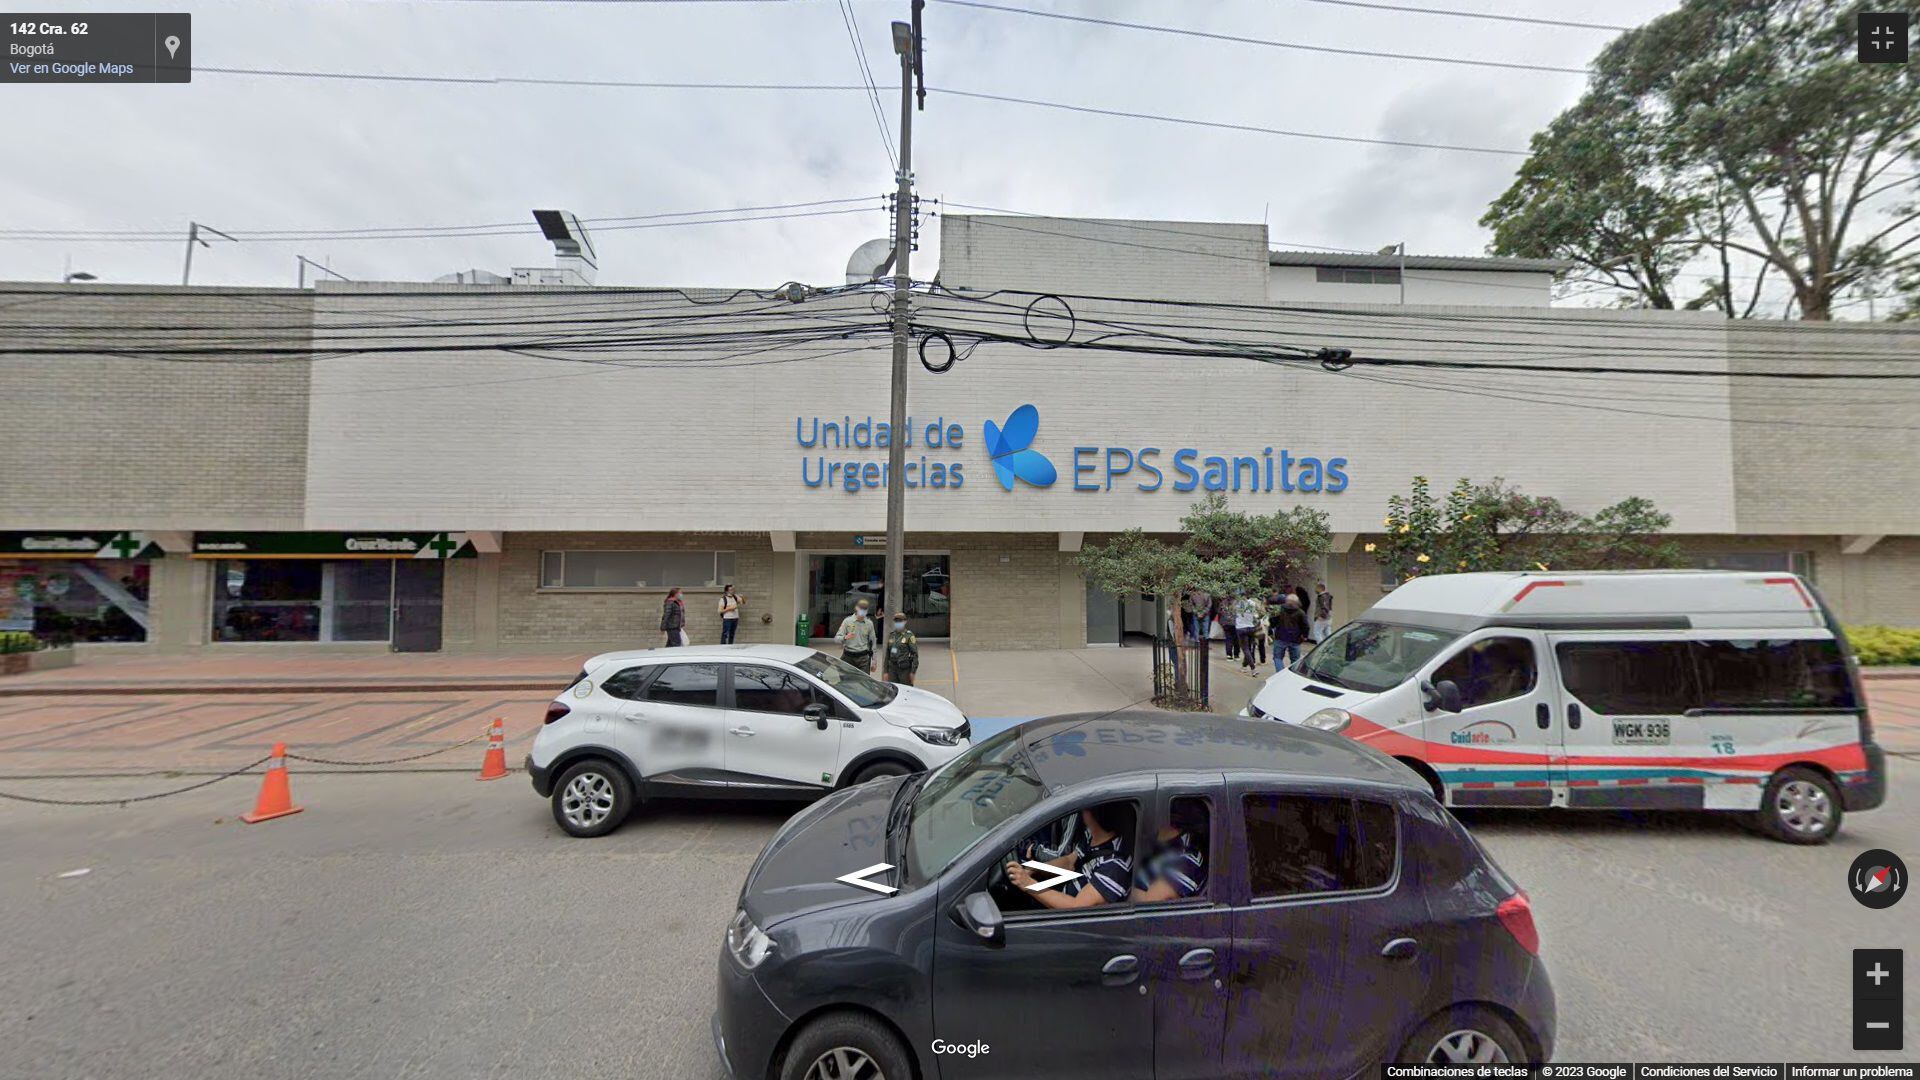 En el lugar, actualmente se ubica un Centro de Urgencias de Sanitas (Google Street View)